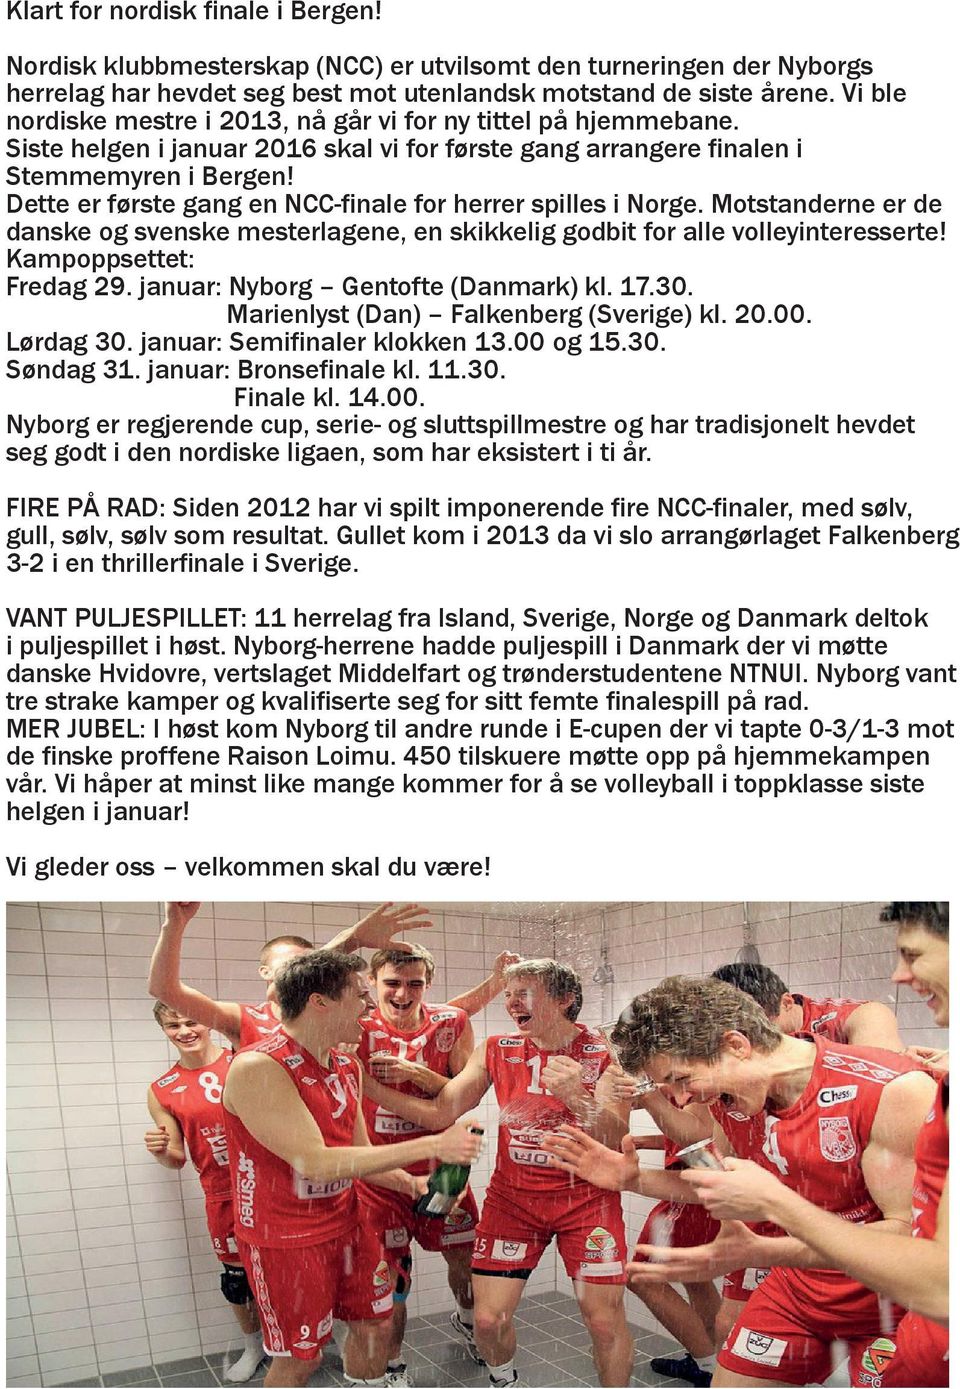 Dette er første gang en NCC-finale for herrer spilles i Norge. Motstanderne er de danske og svenske mesterlagene, en skikkelig godbit for alle volleyinteresserte! Kampoppsettet: Fredag 29.